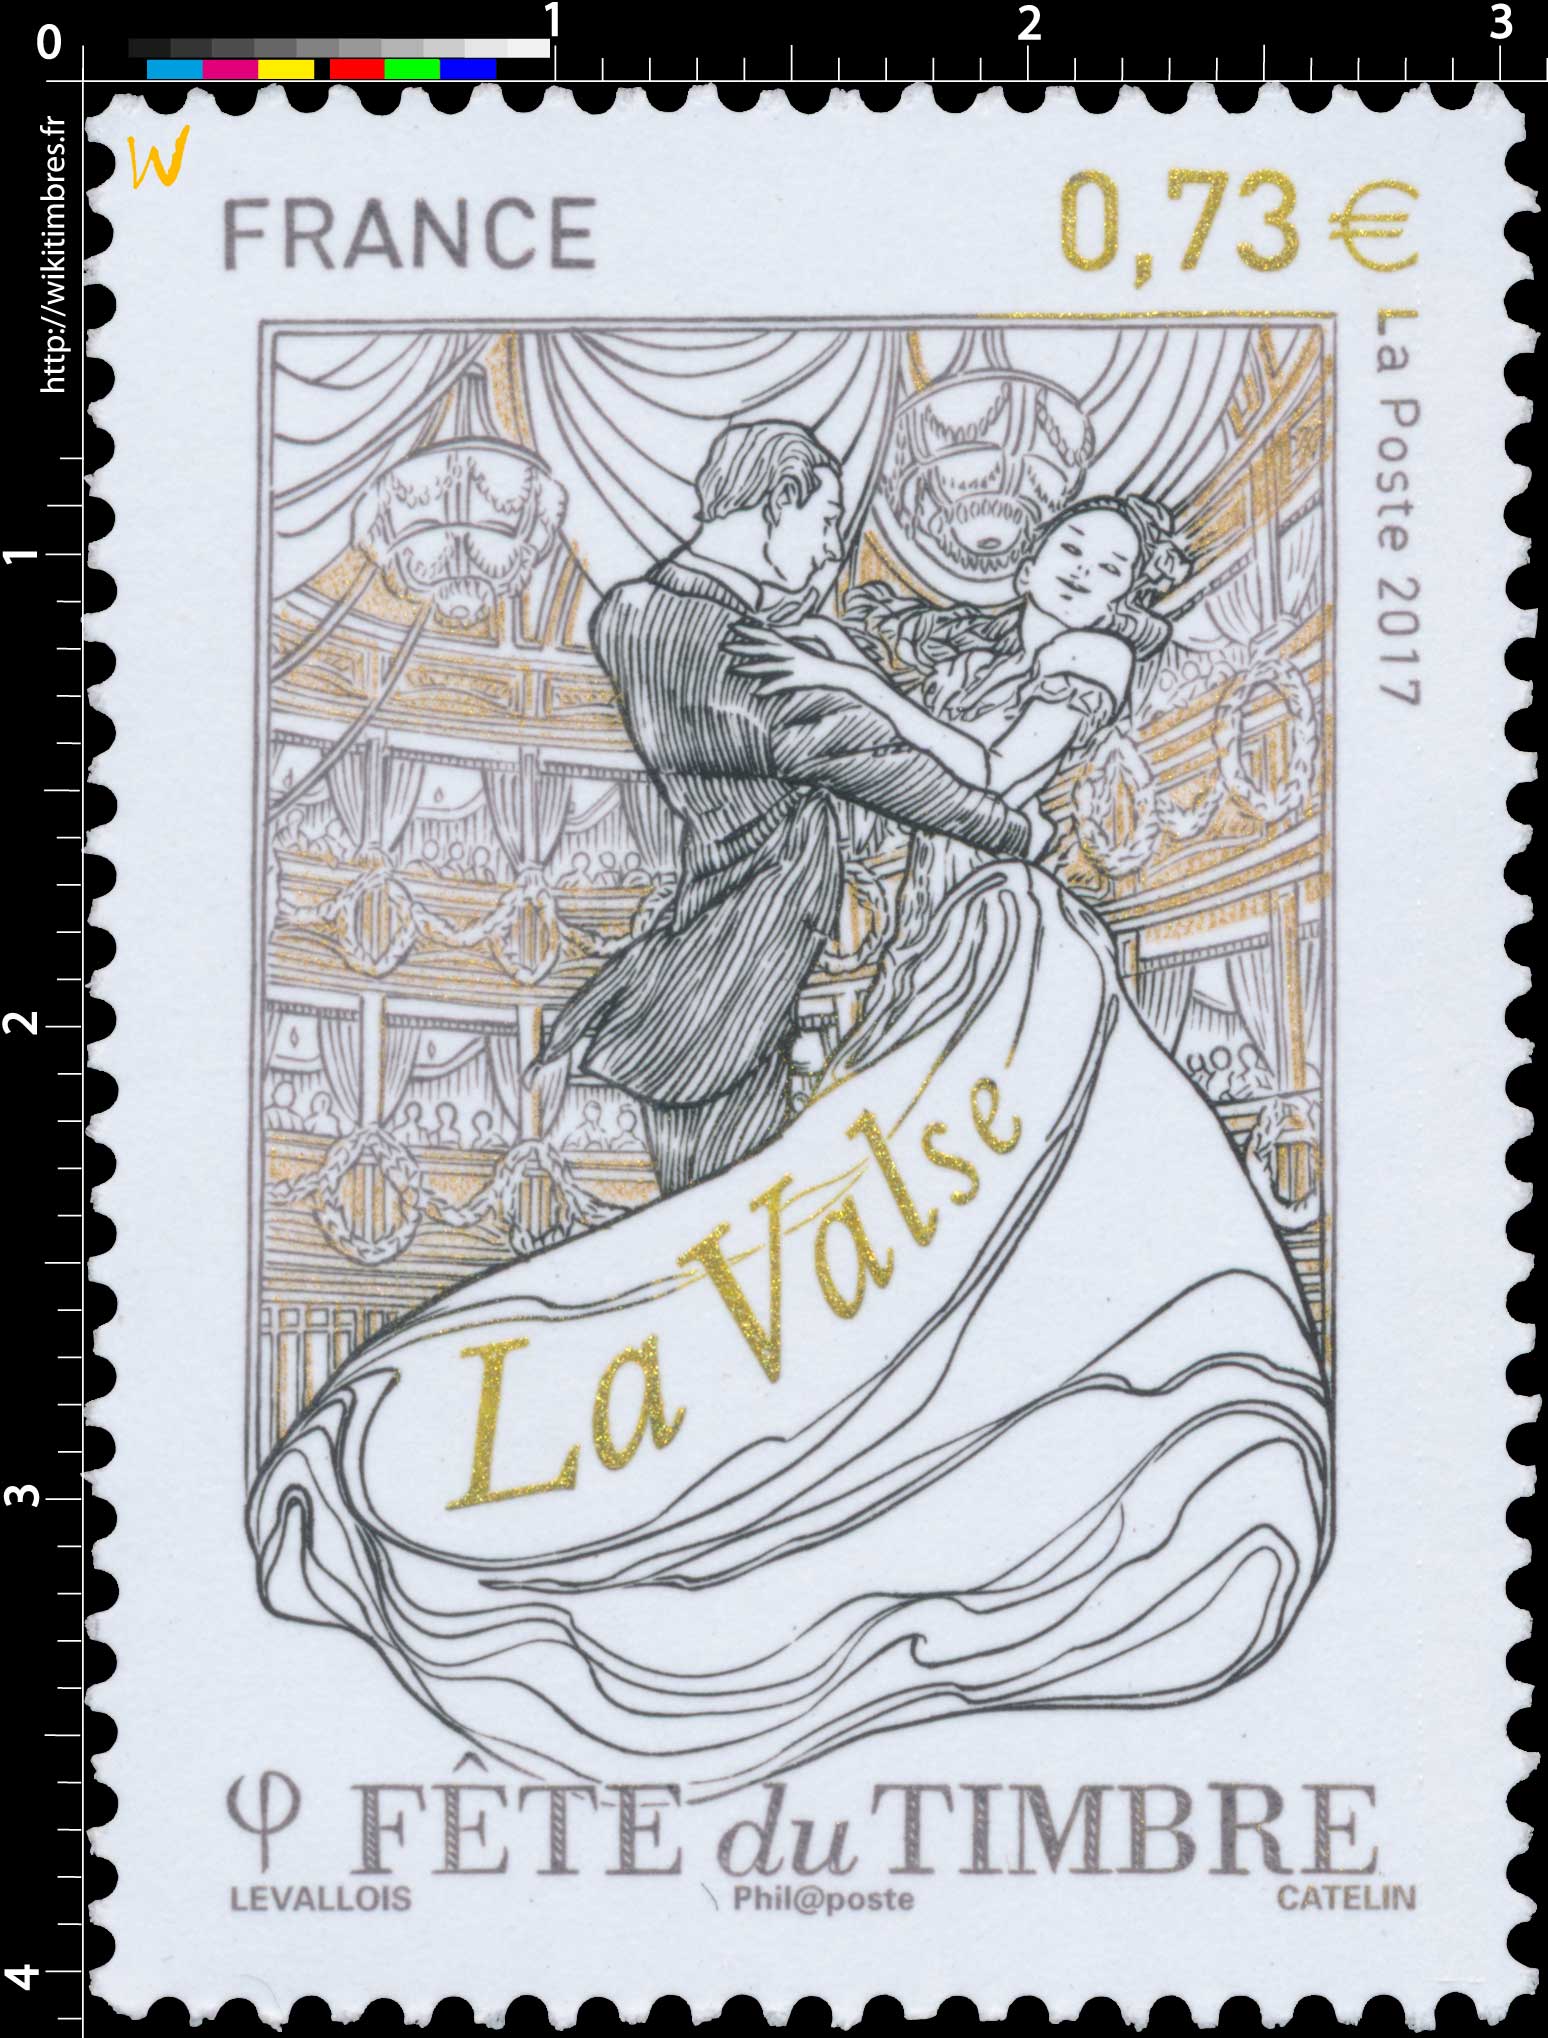 2017 Fête du timbre - La valse